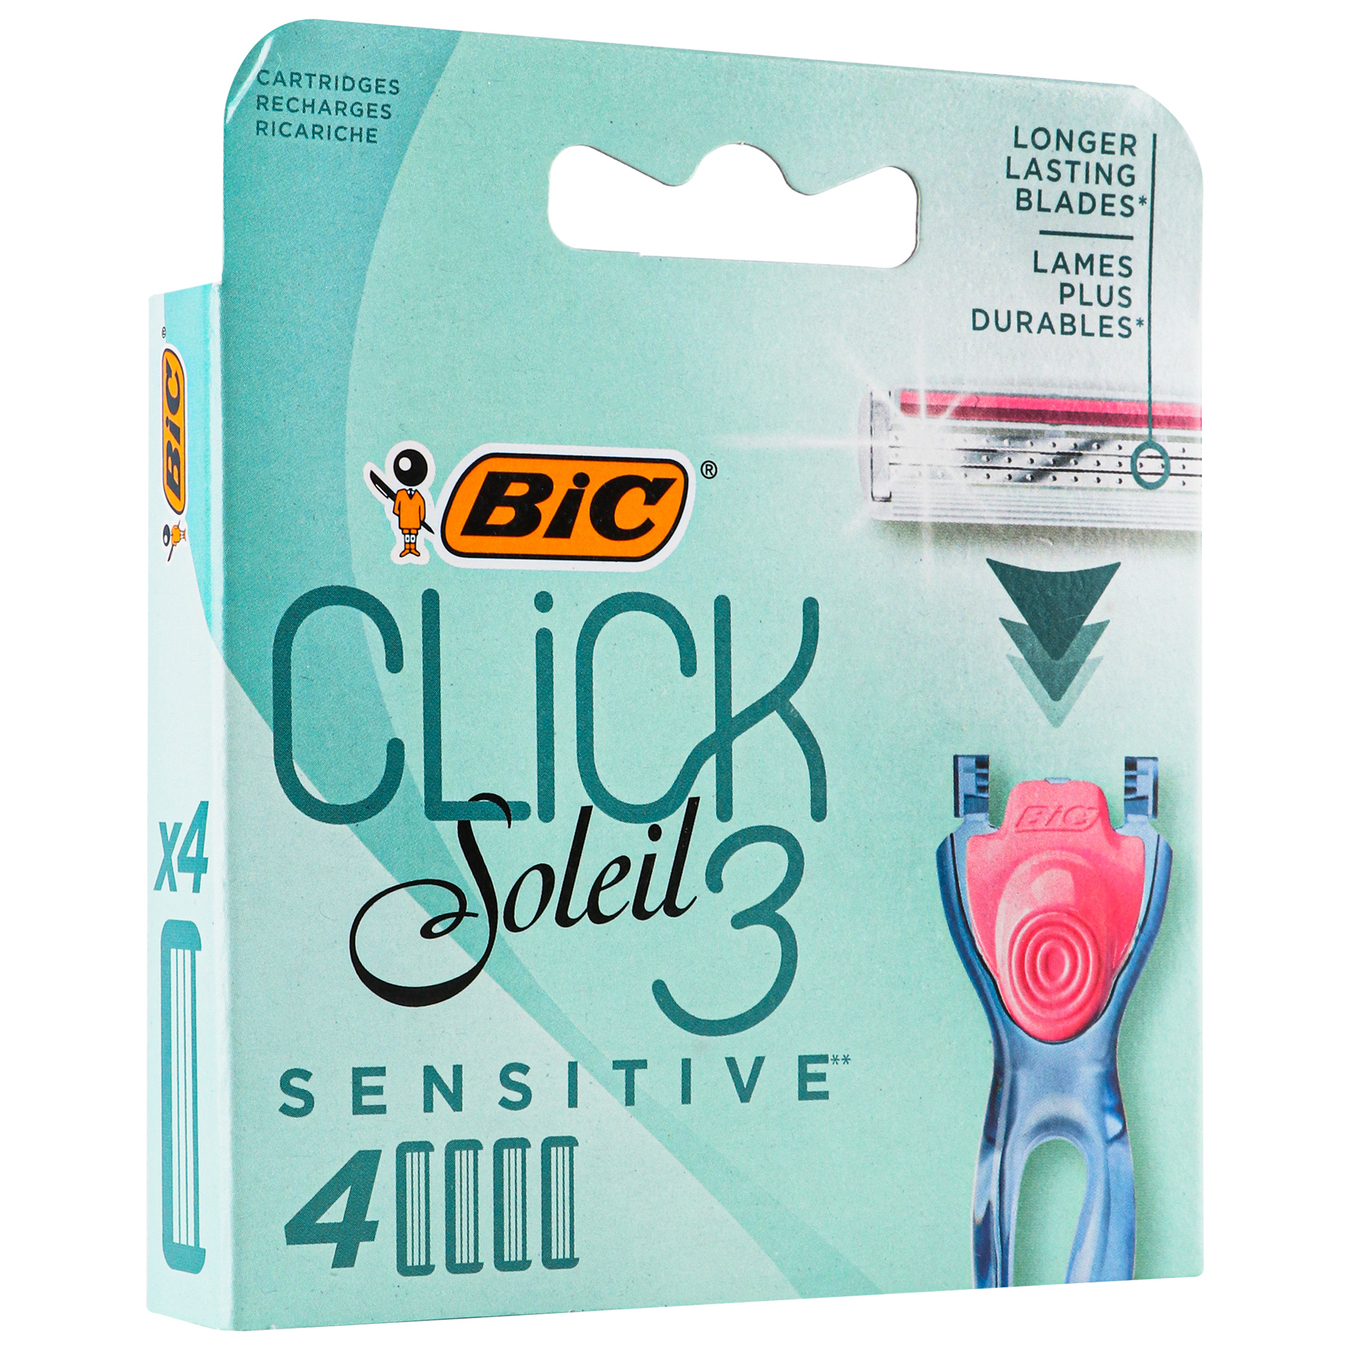 Replacement cassettes BIC Click Soleil 3 for women's shaving 4 pcs 2